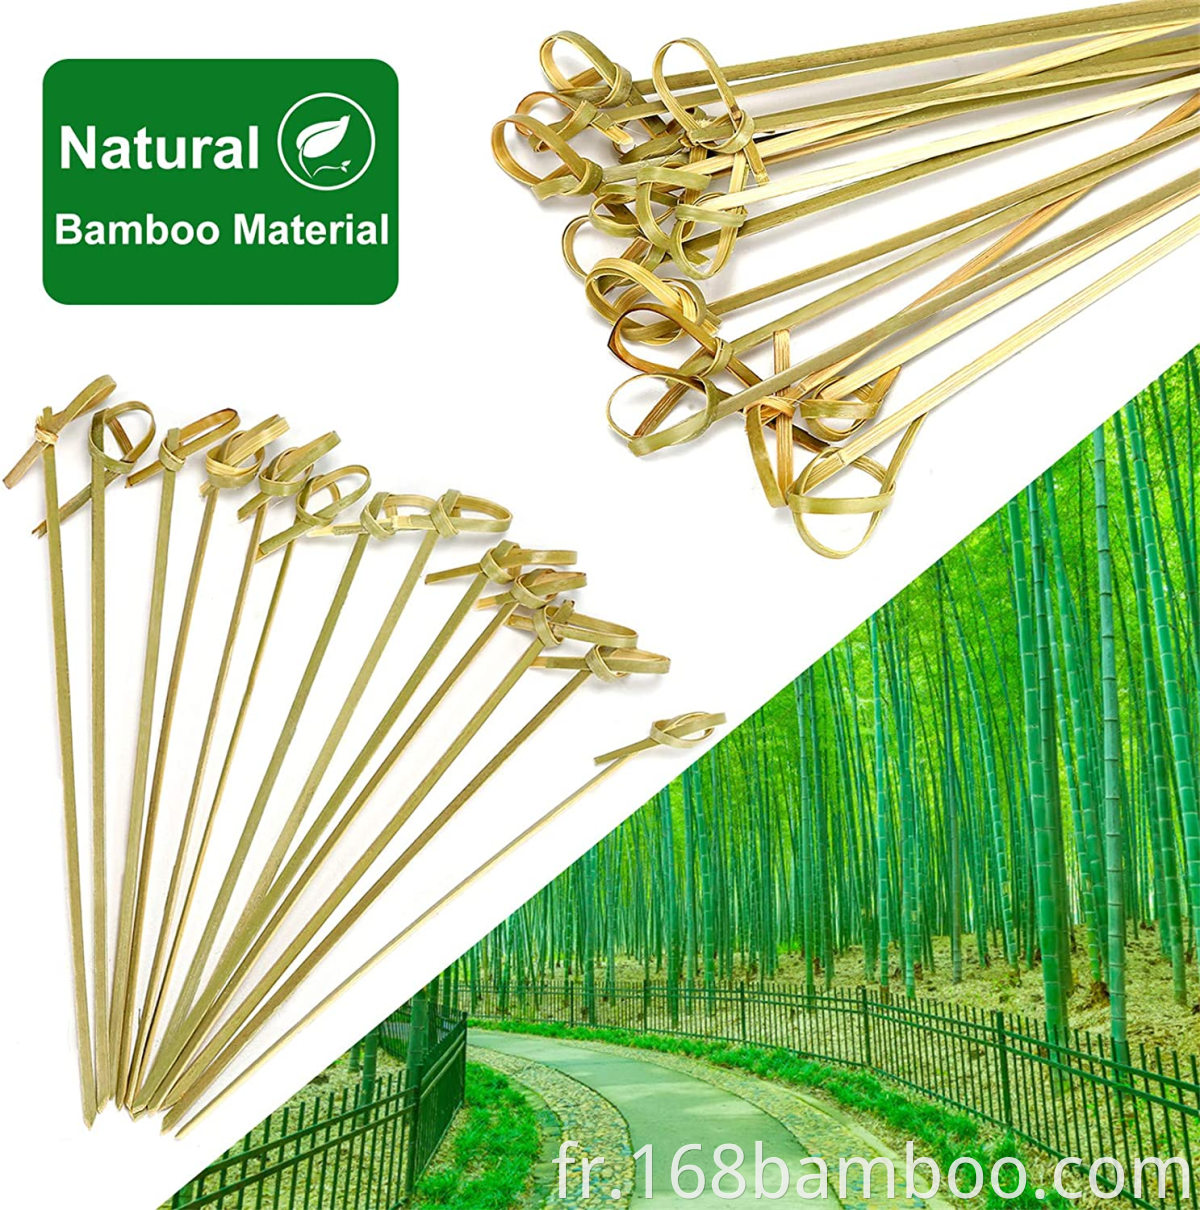 Natural bamboo materiel